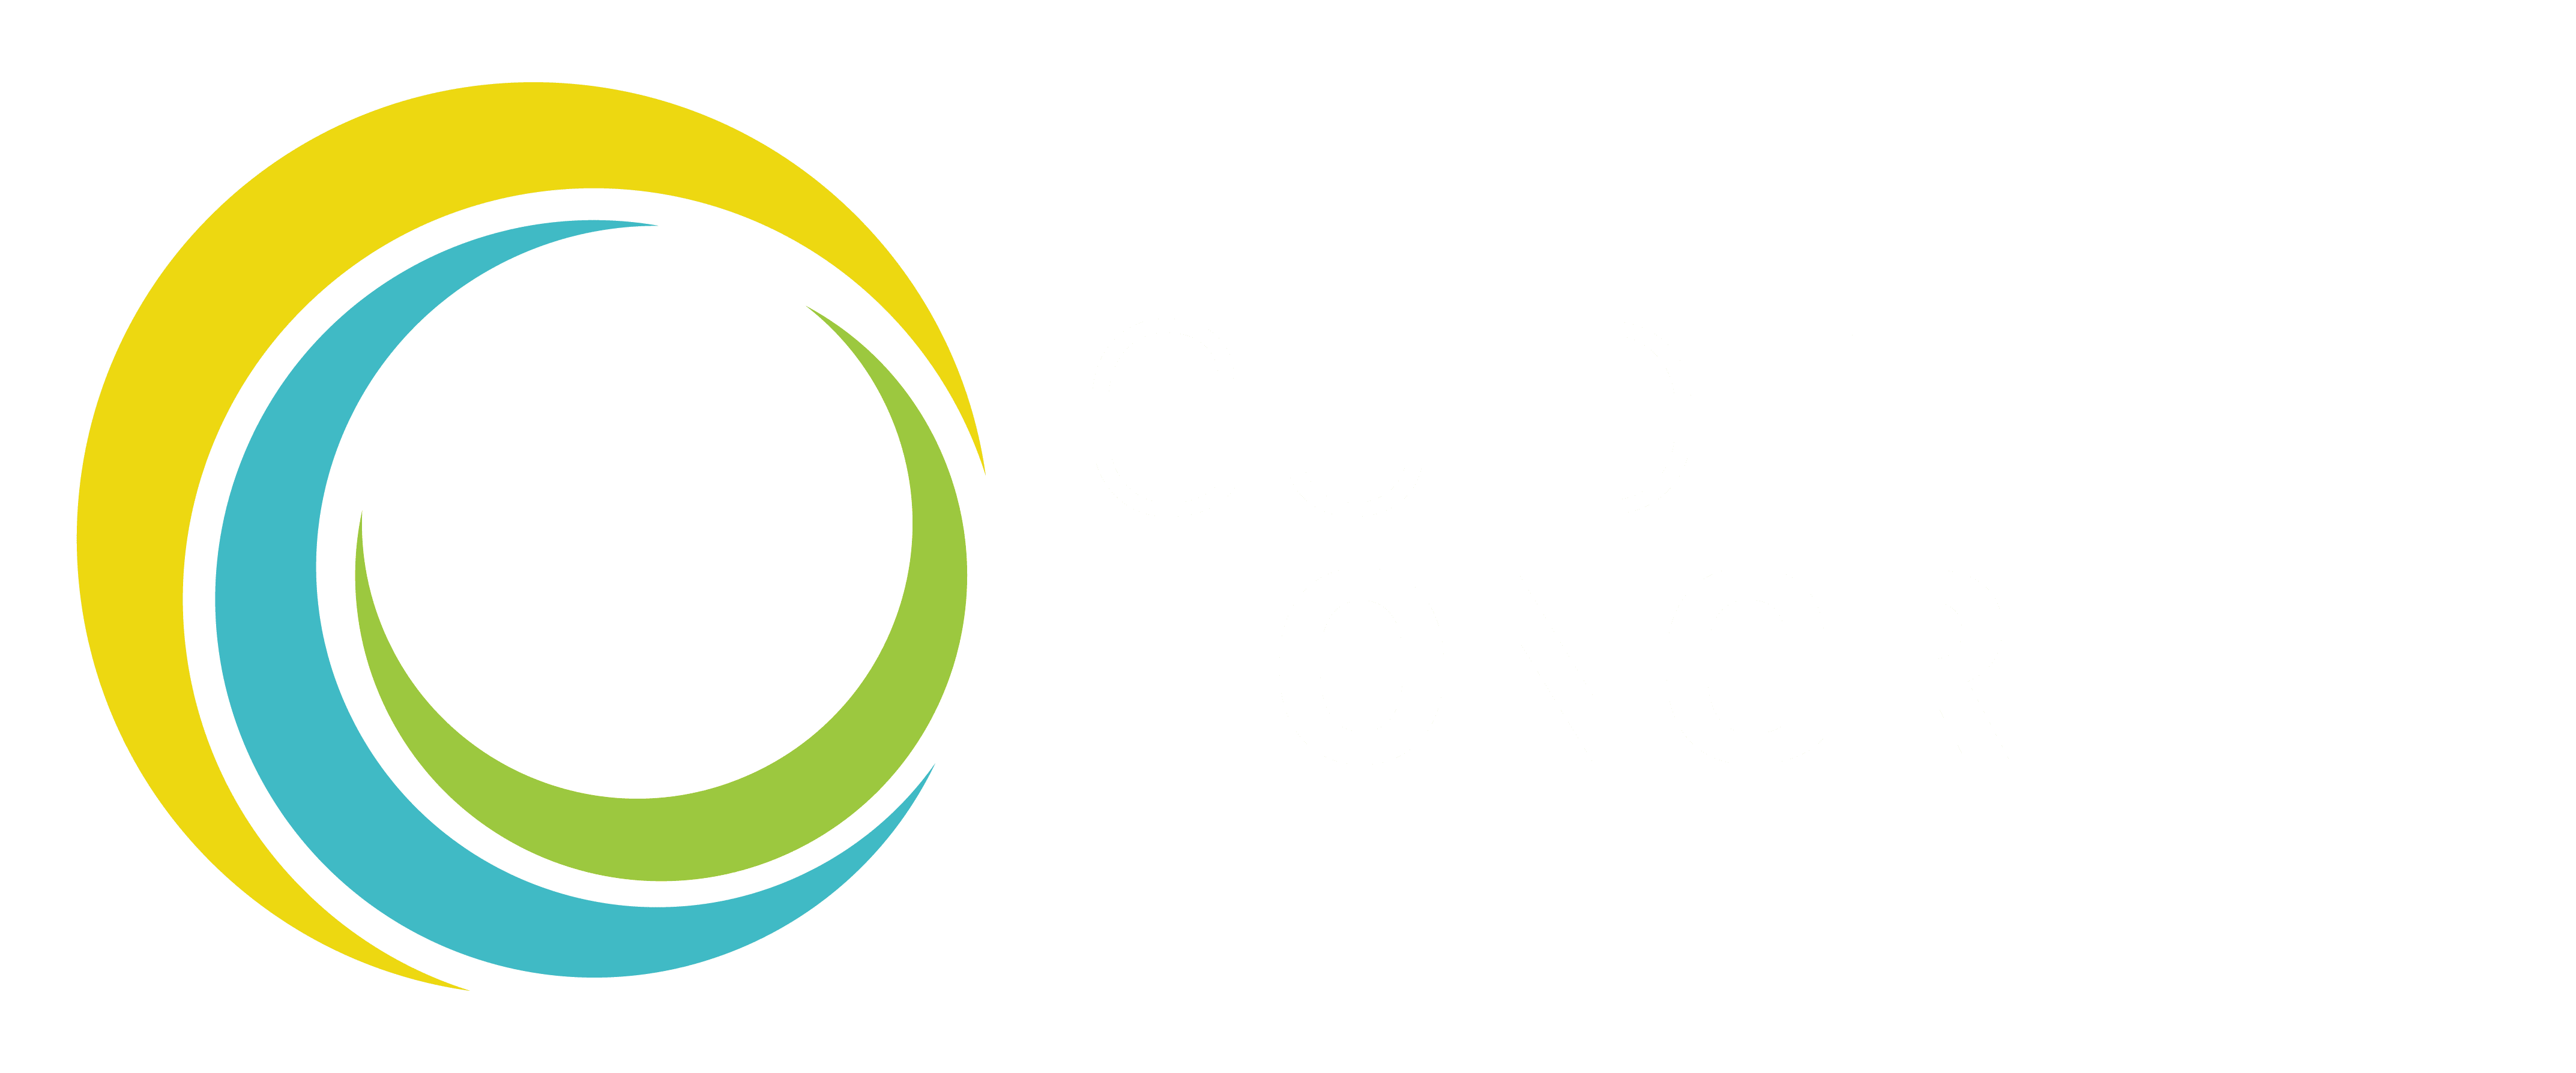 Guide Hongrie